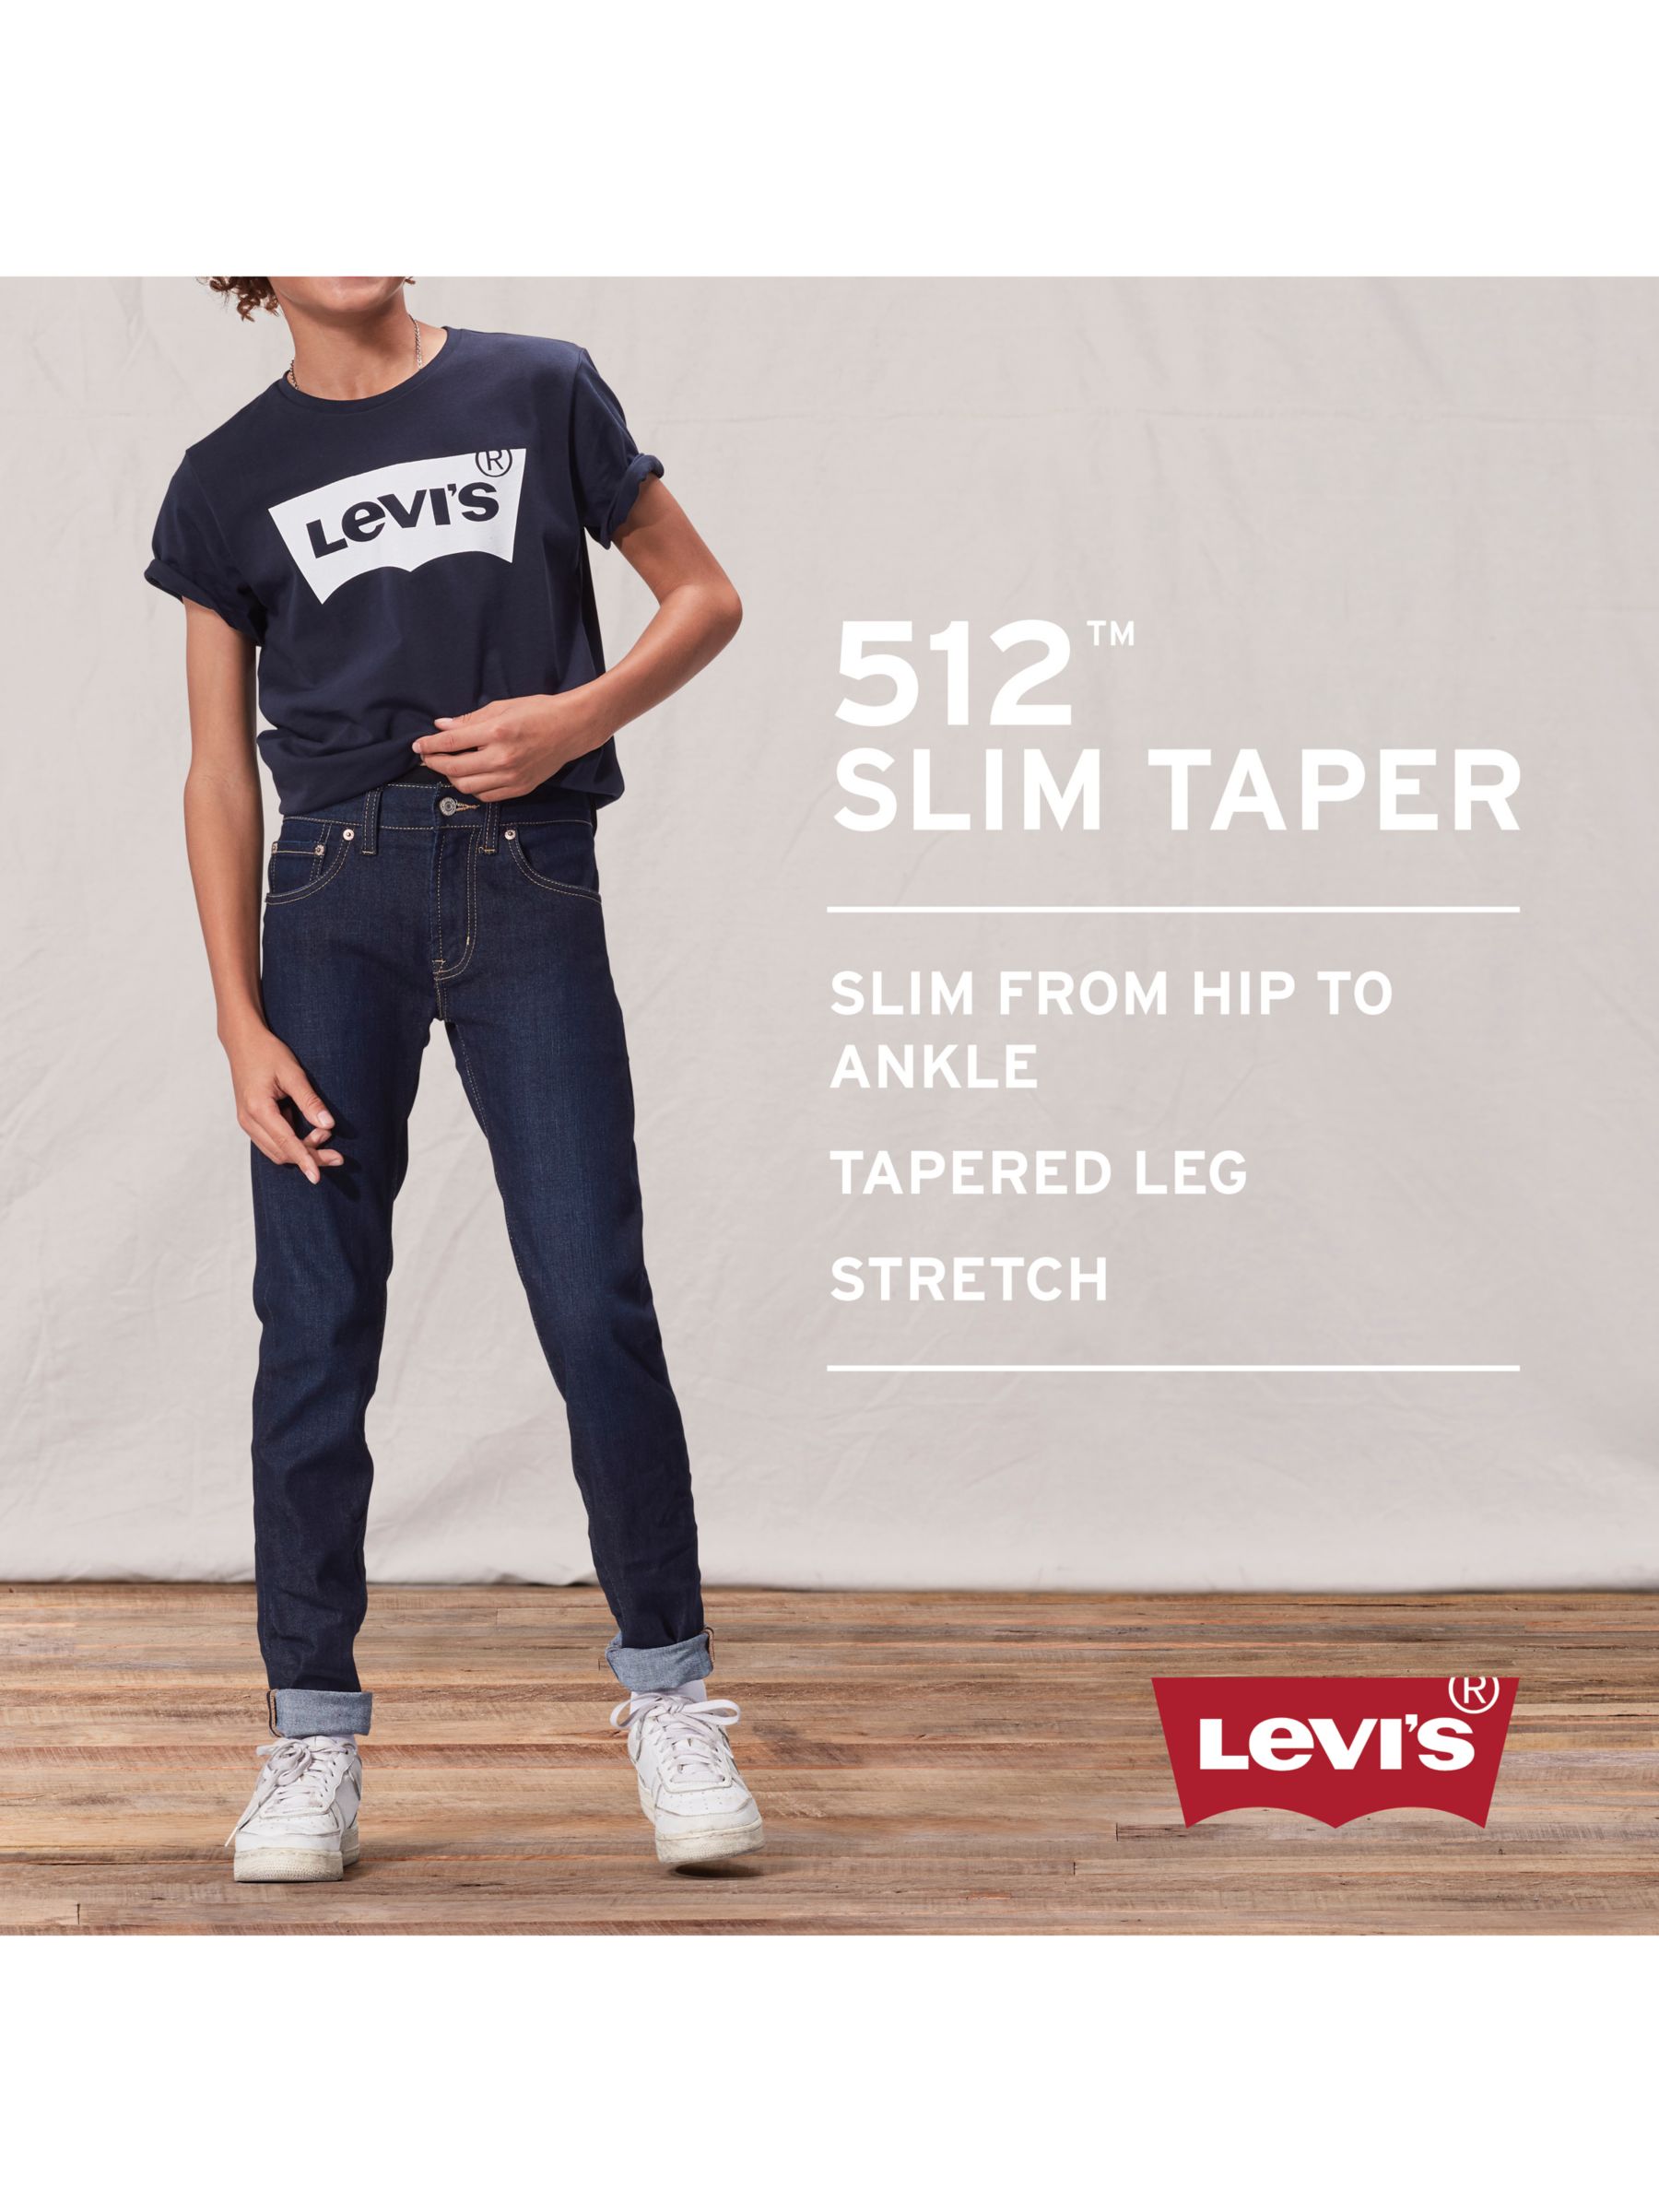 Levi's Kids' 512 Slim Tapered Dreams, Dark Blue, 8 years